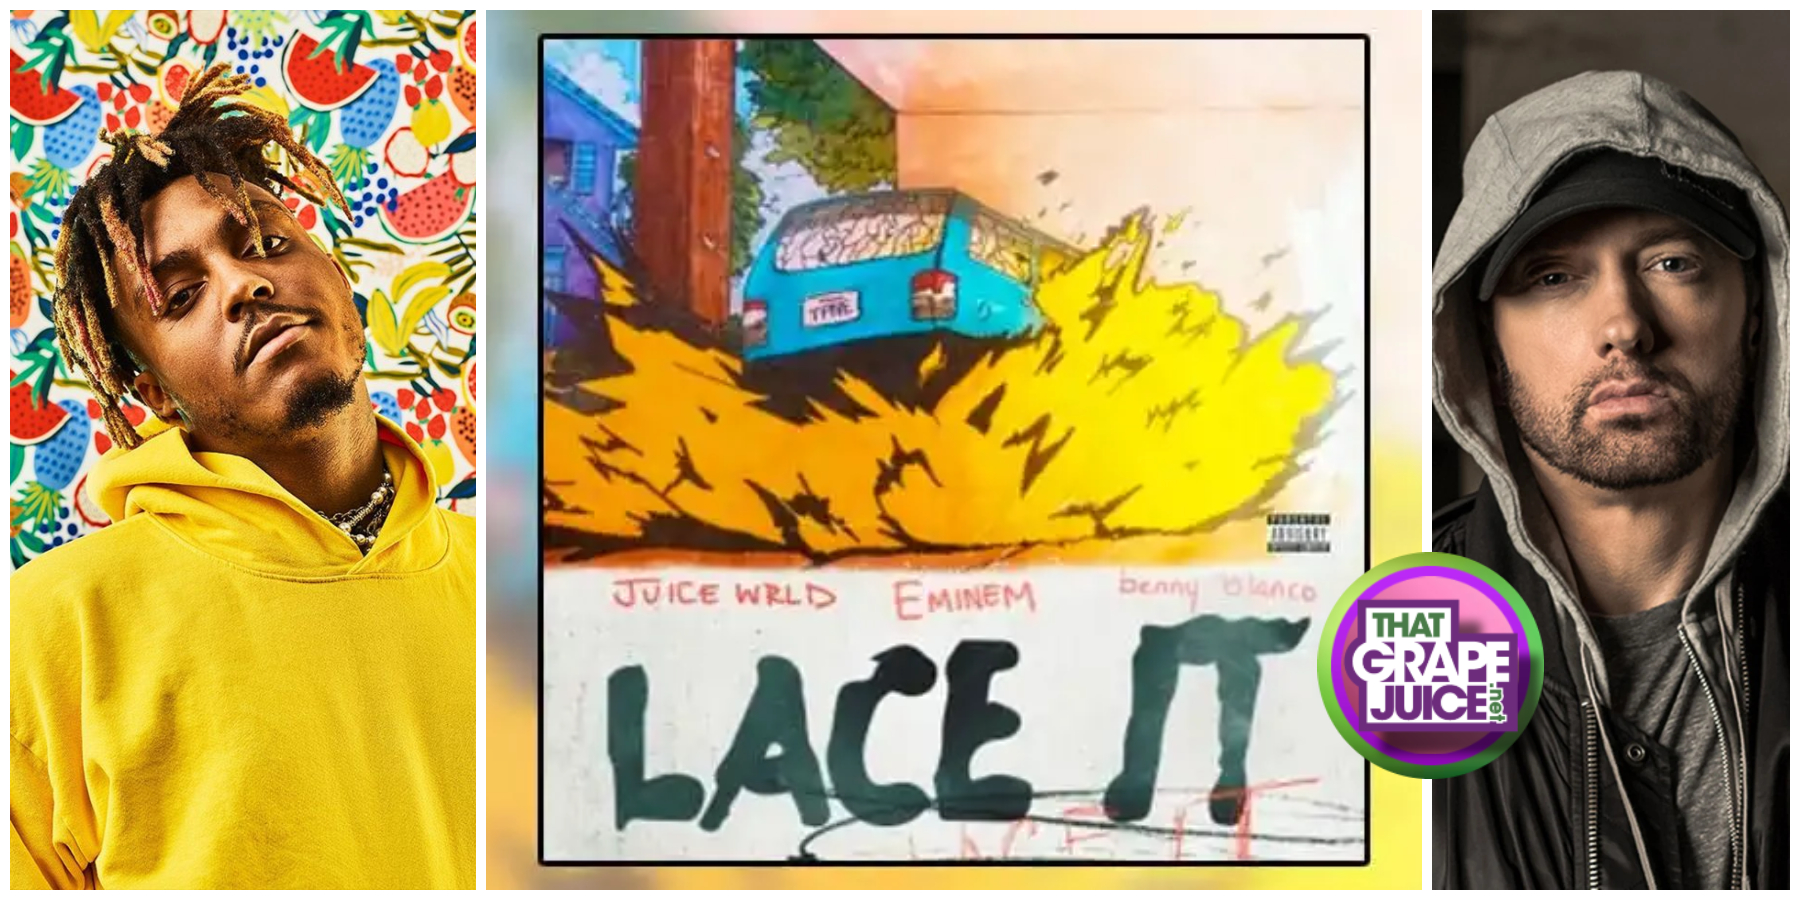 New Song: Juice WRLD, Eminem, & Benny Blanco – ‘Lace It’